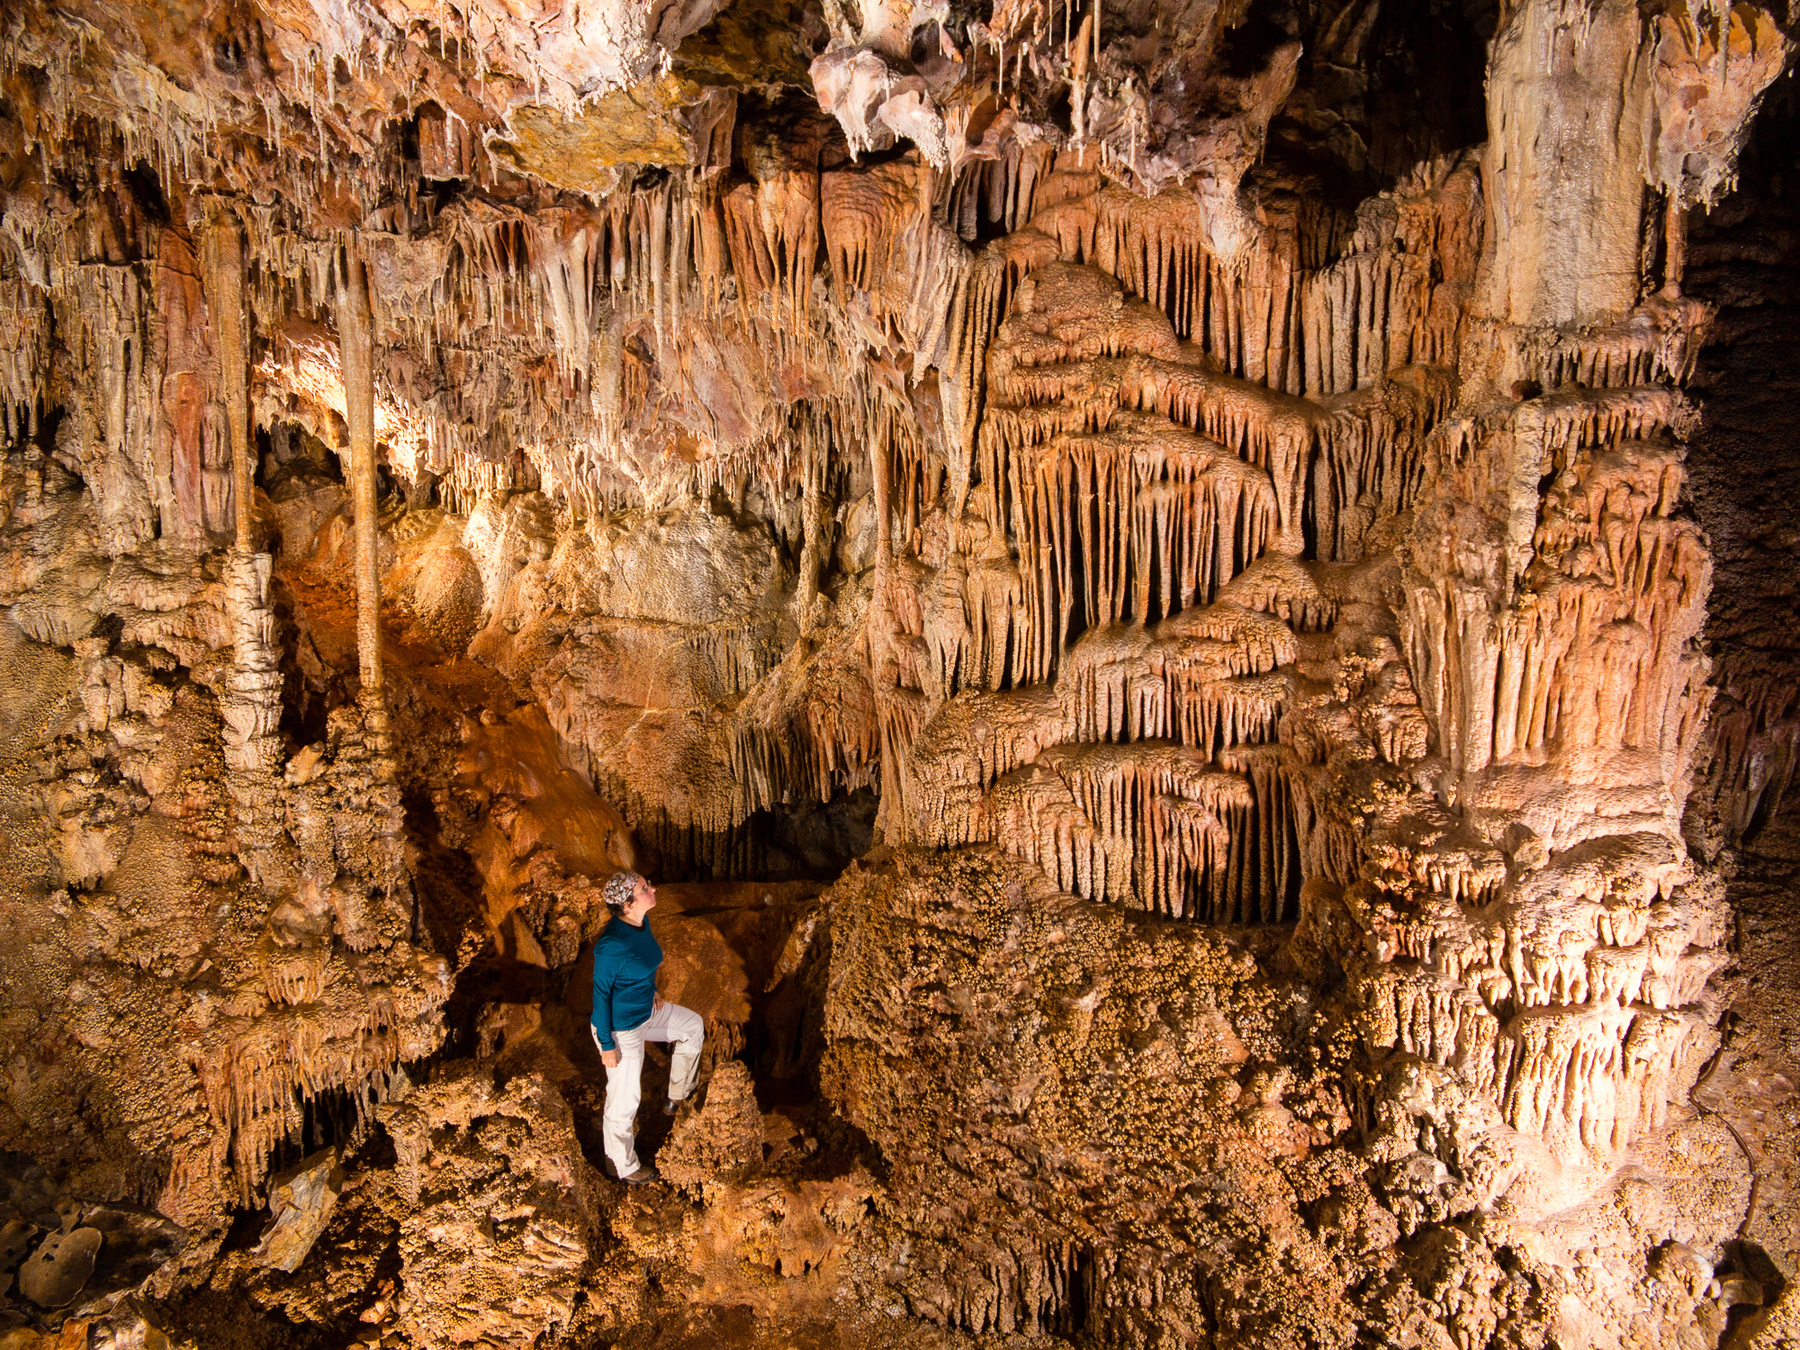 Pál-völgyi-barlang. Az 1904-ben még csak néhány száz méter hosszúságban felfedezett Pál-völgyi-barlang a szisztematikus kutatások során  ma már a 31 km-t is meghaladja, ezzel jelenleg hazánk leghosszabb barlangja.  Az eocén kori és triász időszaki mészkőben, a mélyből feltörő melegvizek hatására kialakult, labirintusos járathálózatok irányát a hegység törésvonalai határozták meg. A budai barlangoktól eltérően cseppkövekben gazdag, és 1927 óta egy szakasza villanyvilágítás mellett utcai ruhában is látogatható.